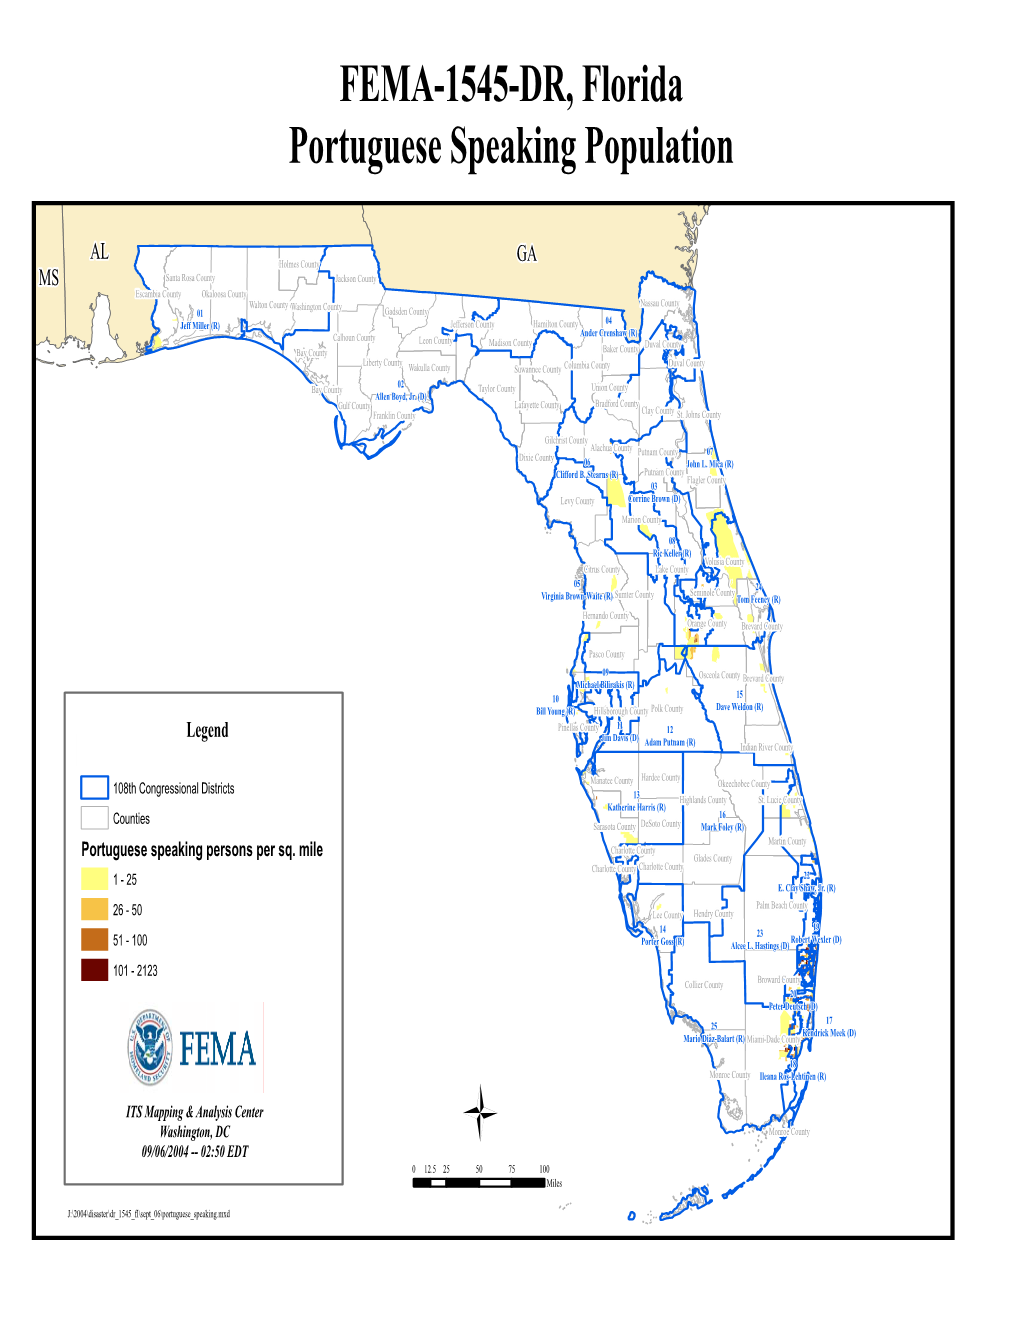 FEMA-1545-DR, Florida Portuguese Speaking Population